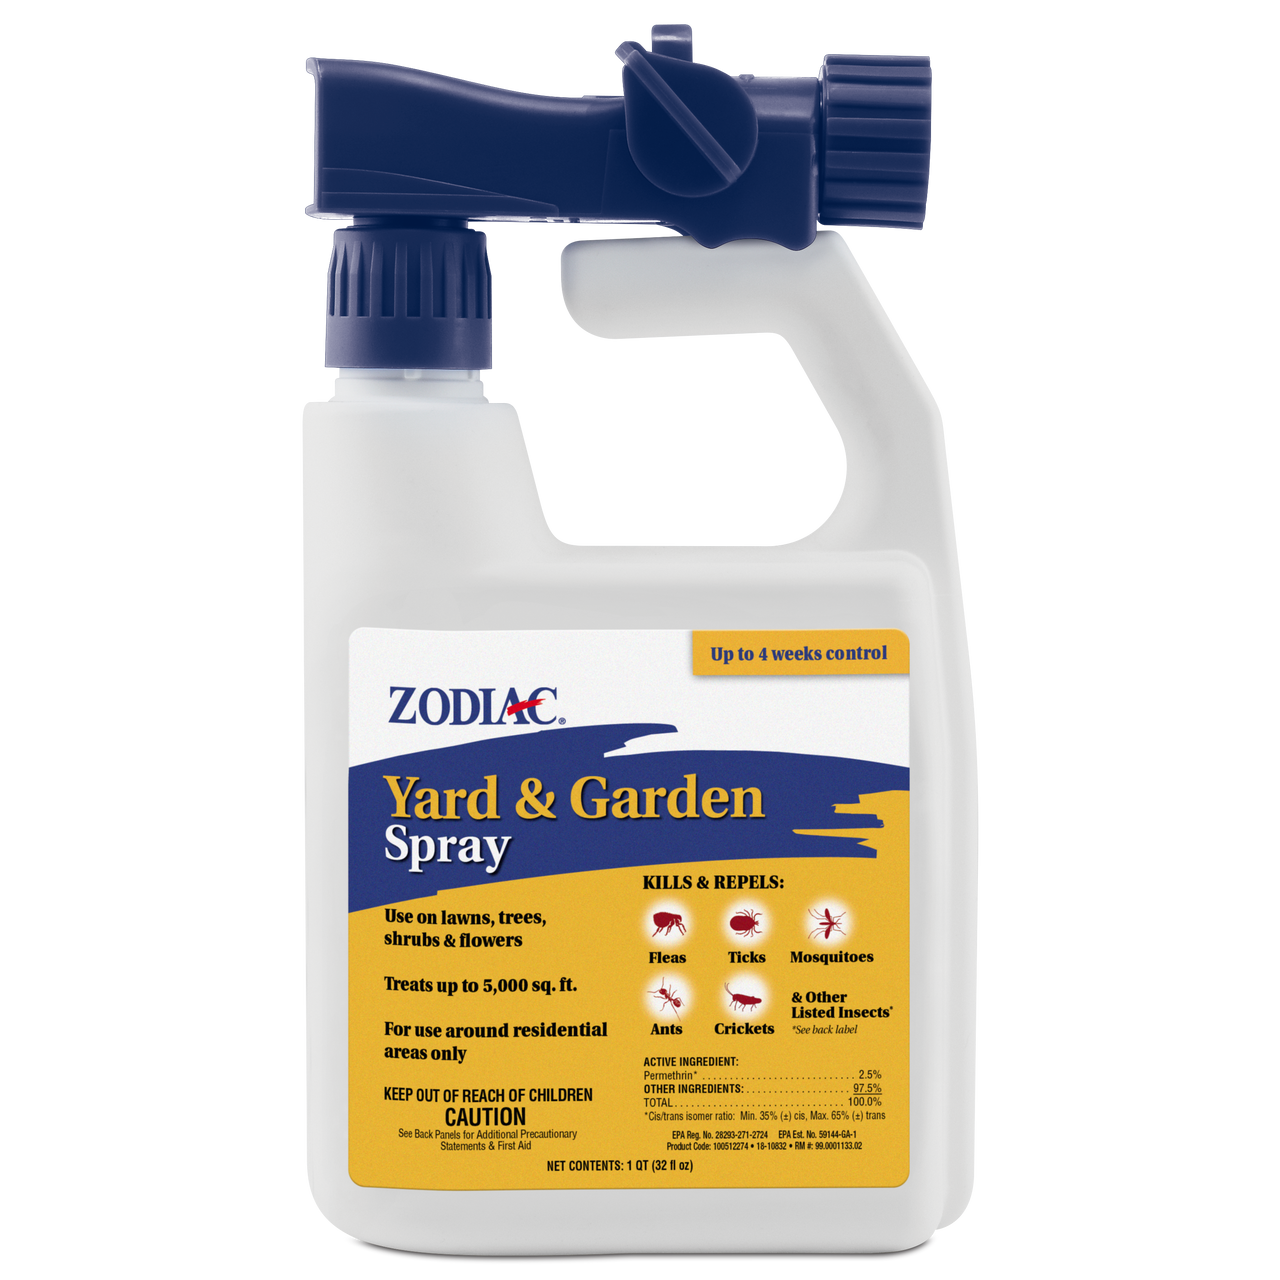 Zodiac Yard and Garden Spray 32 fluid ounces